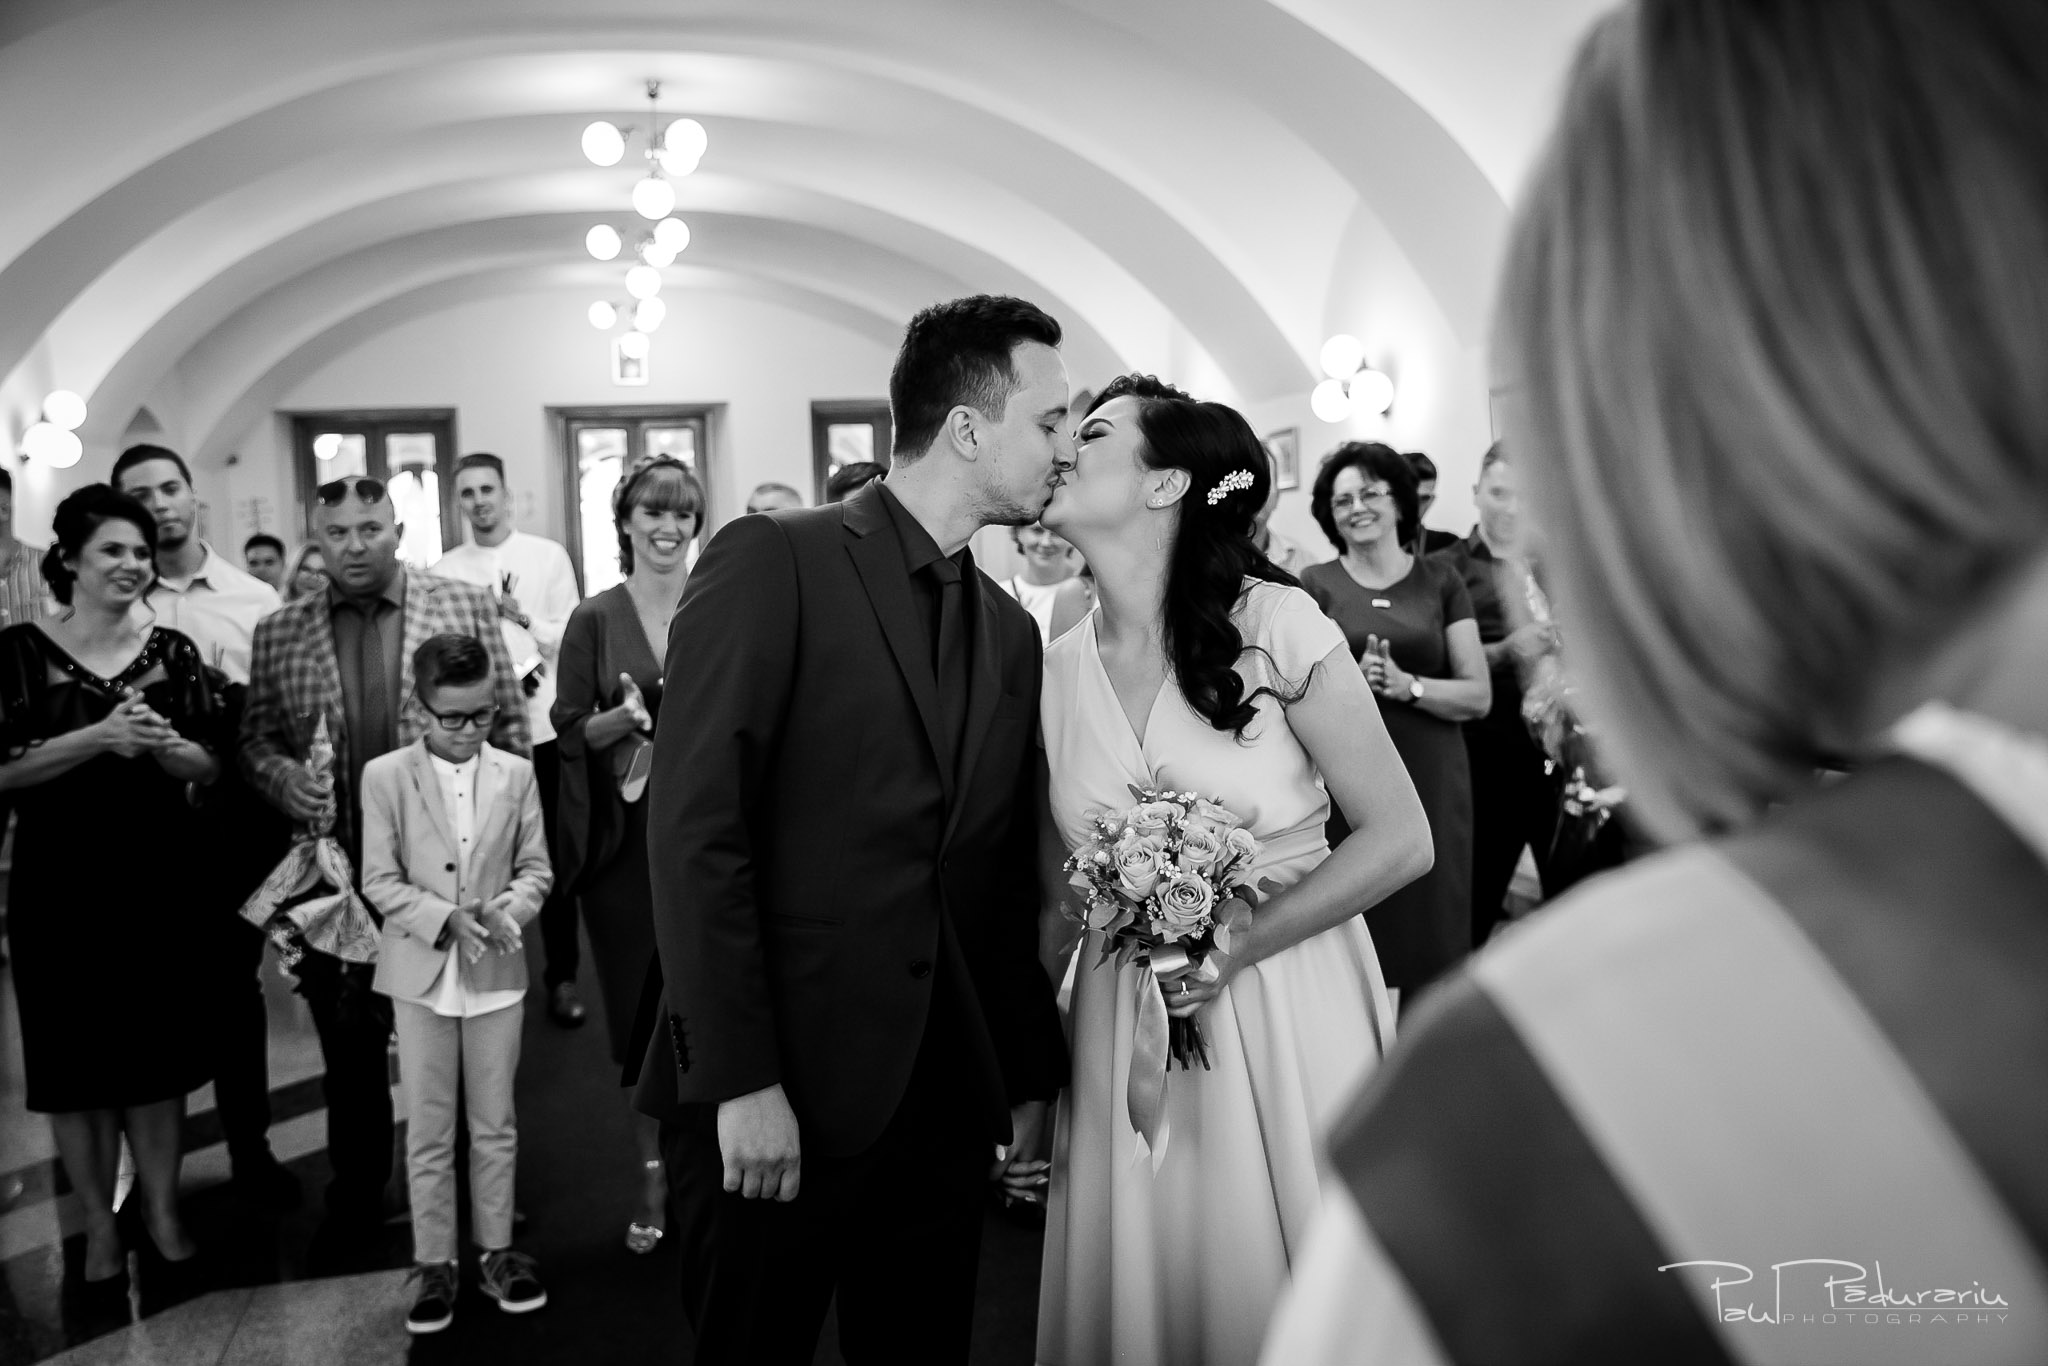 Denisa si Andrei nunta Hotel International Iasi 2019 fotograf nunta iasi paul padurariu 4